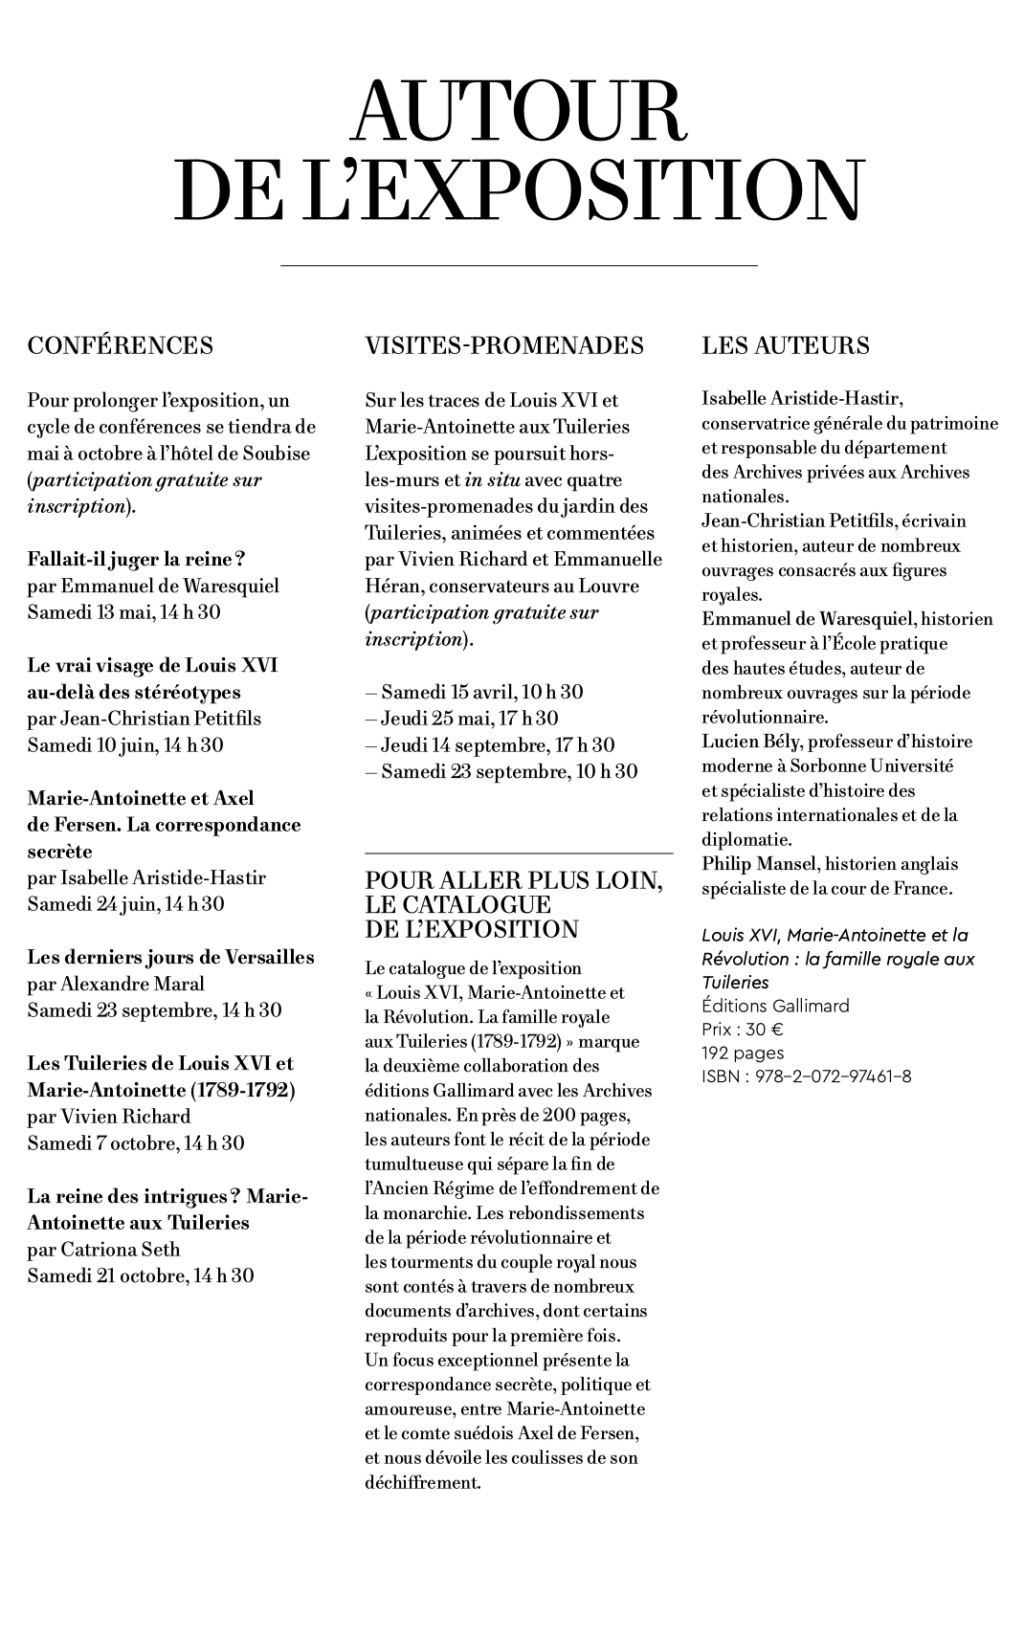 archives - Exposition aux Archives nationales : Louis XVI, Marie-Antoinette et la Révolution, la famille royale aux Tuileries  Capt4829